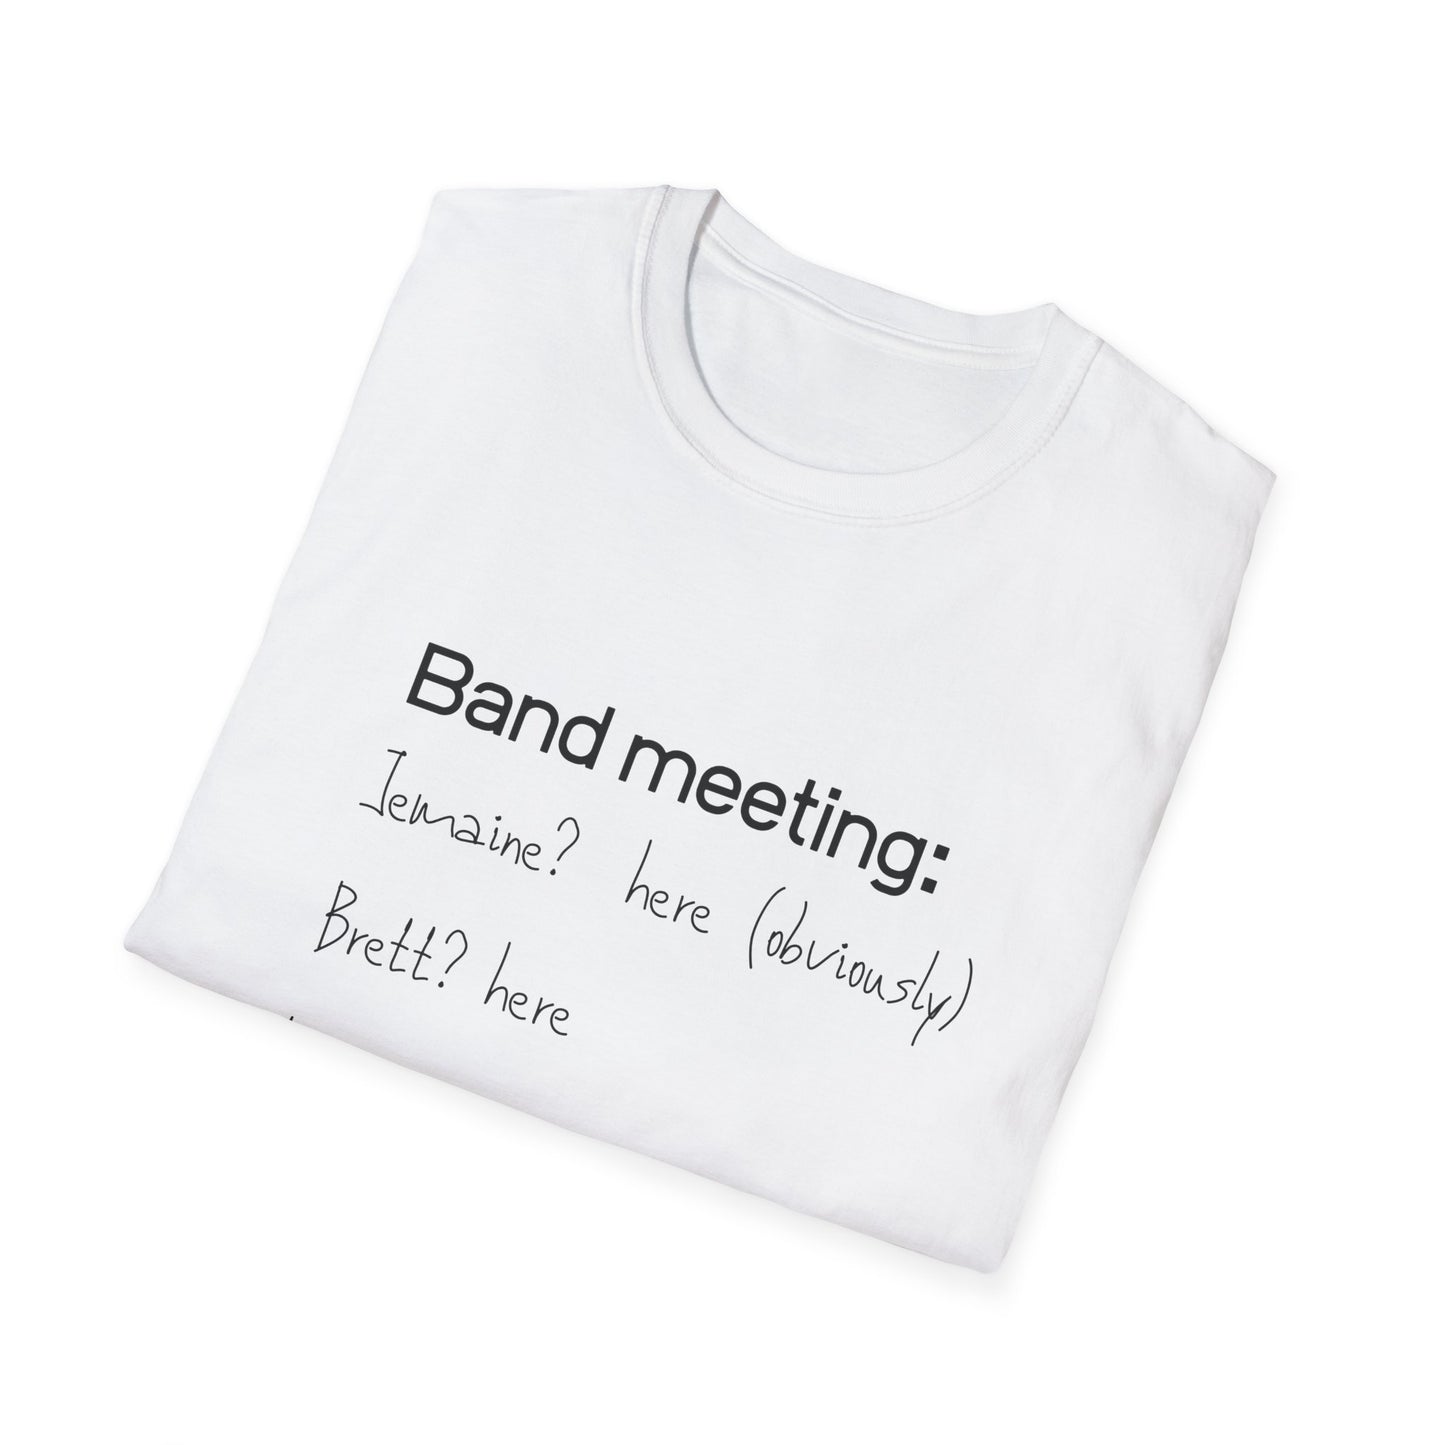 Band meeting-shirt - Flight of the Conchords fan t-shirt - Birthday gift for flight of the Conchords fan